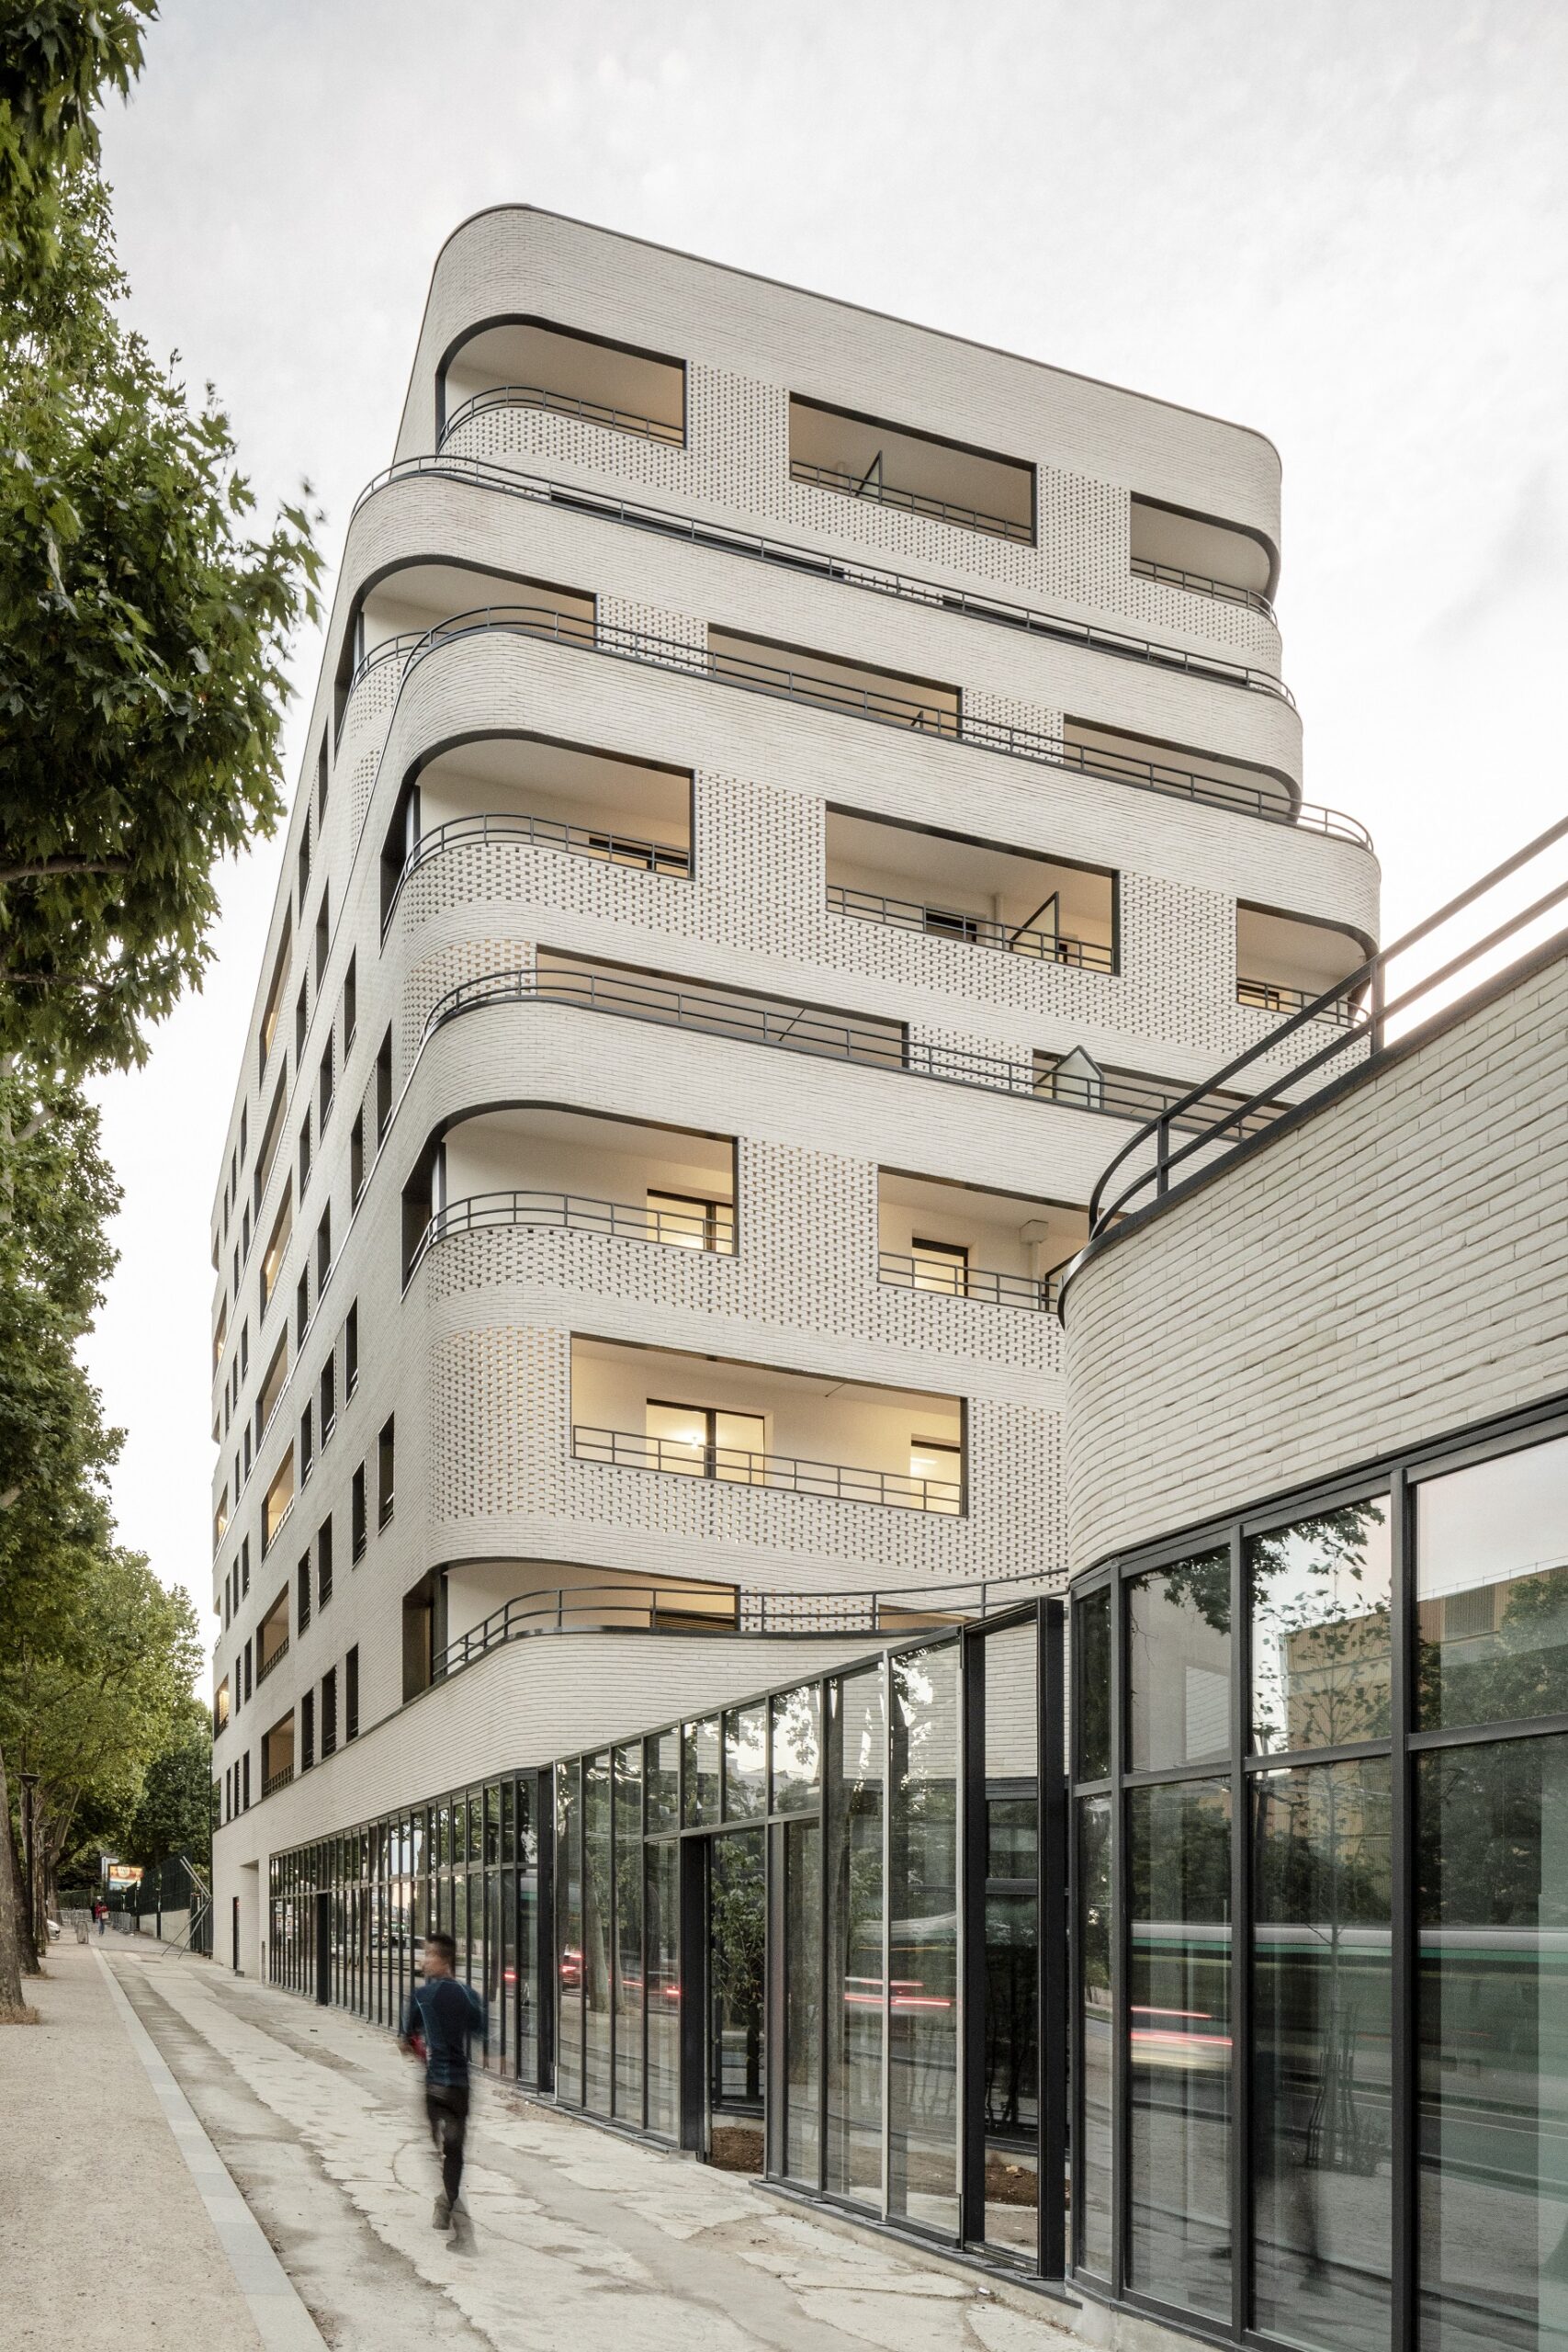 Logements locatifs sociaux à Paris | Architectes : ITAR (Ingrid Taillandier Architectures) - Photos : © 11h45